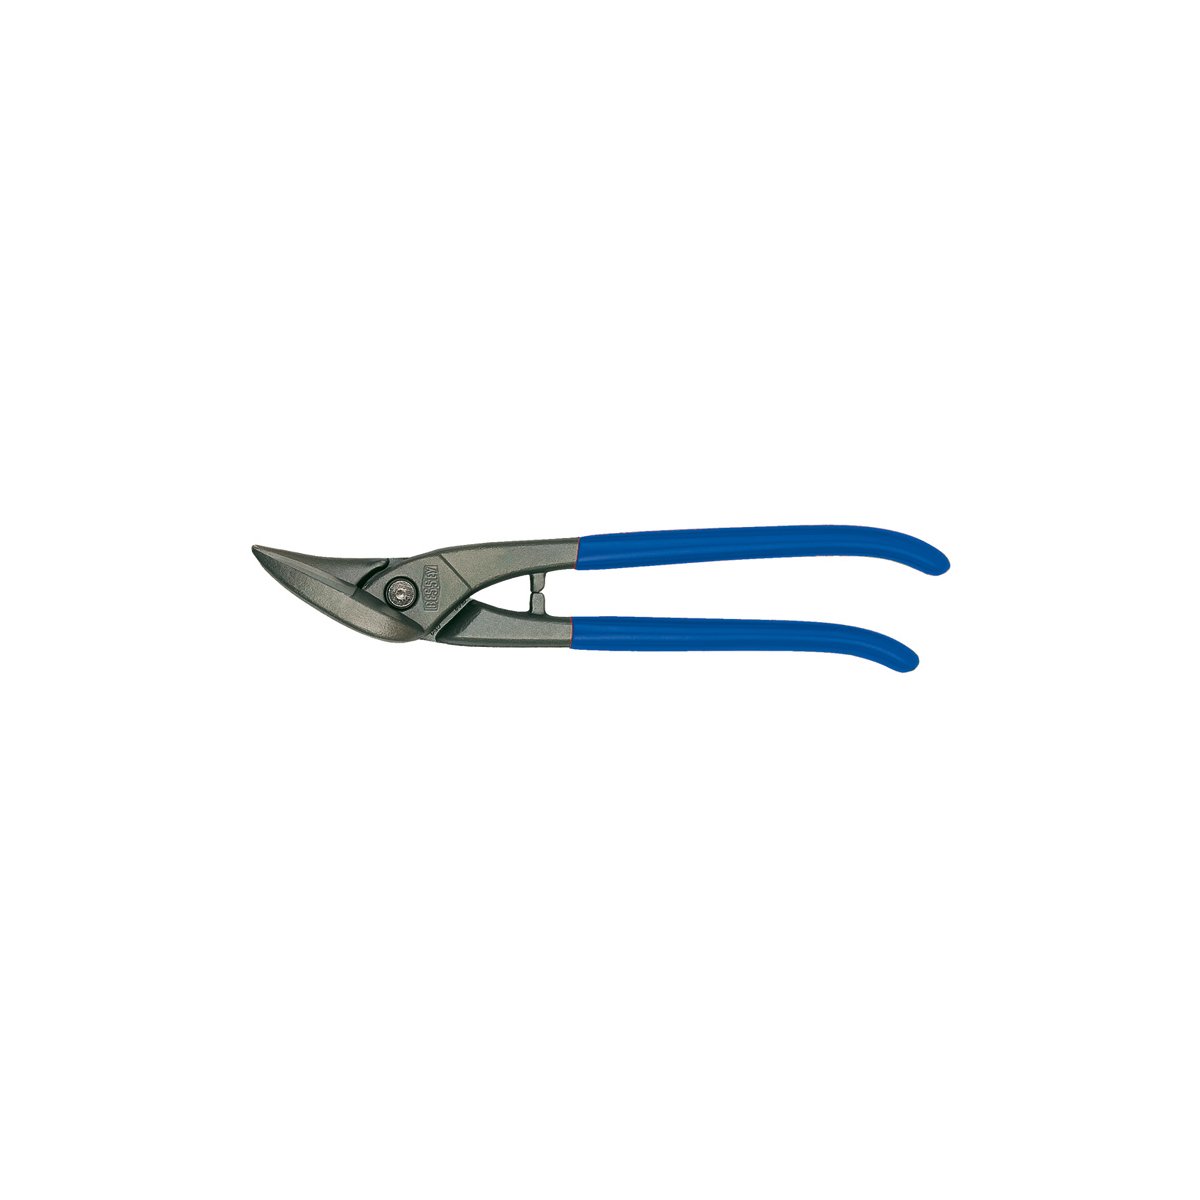 D216-260 Ножницы по металлу, правые, рез: 1.0 мм, 260 мм, непрерывный прямой и фигурный рез